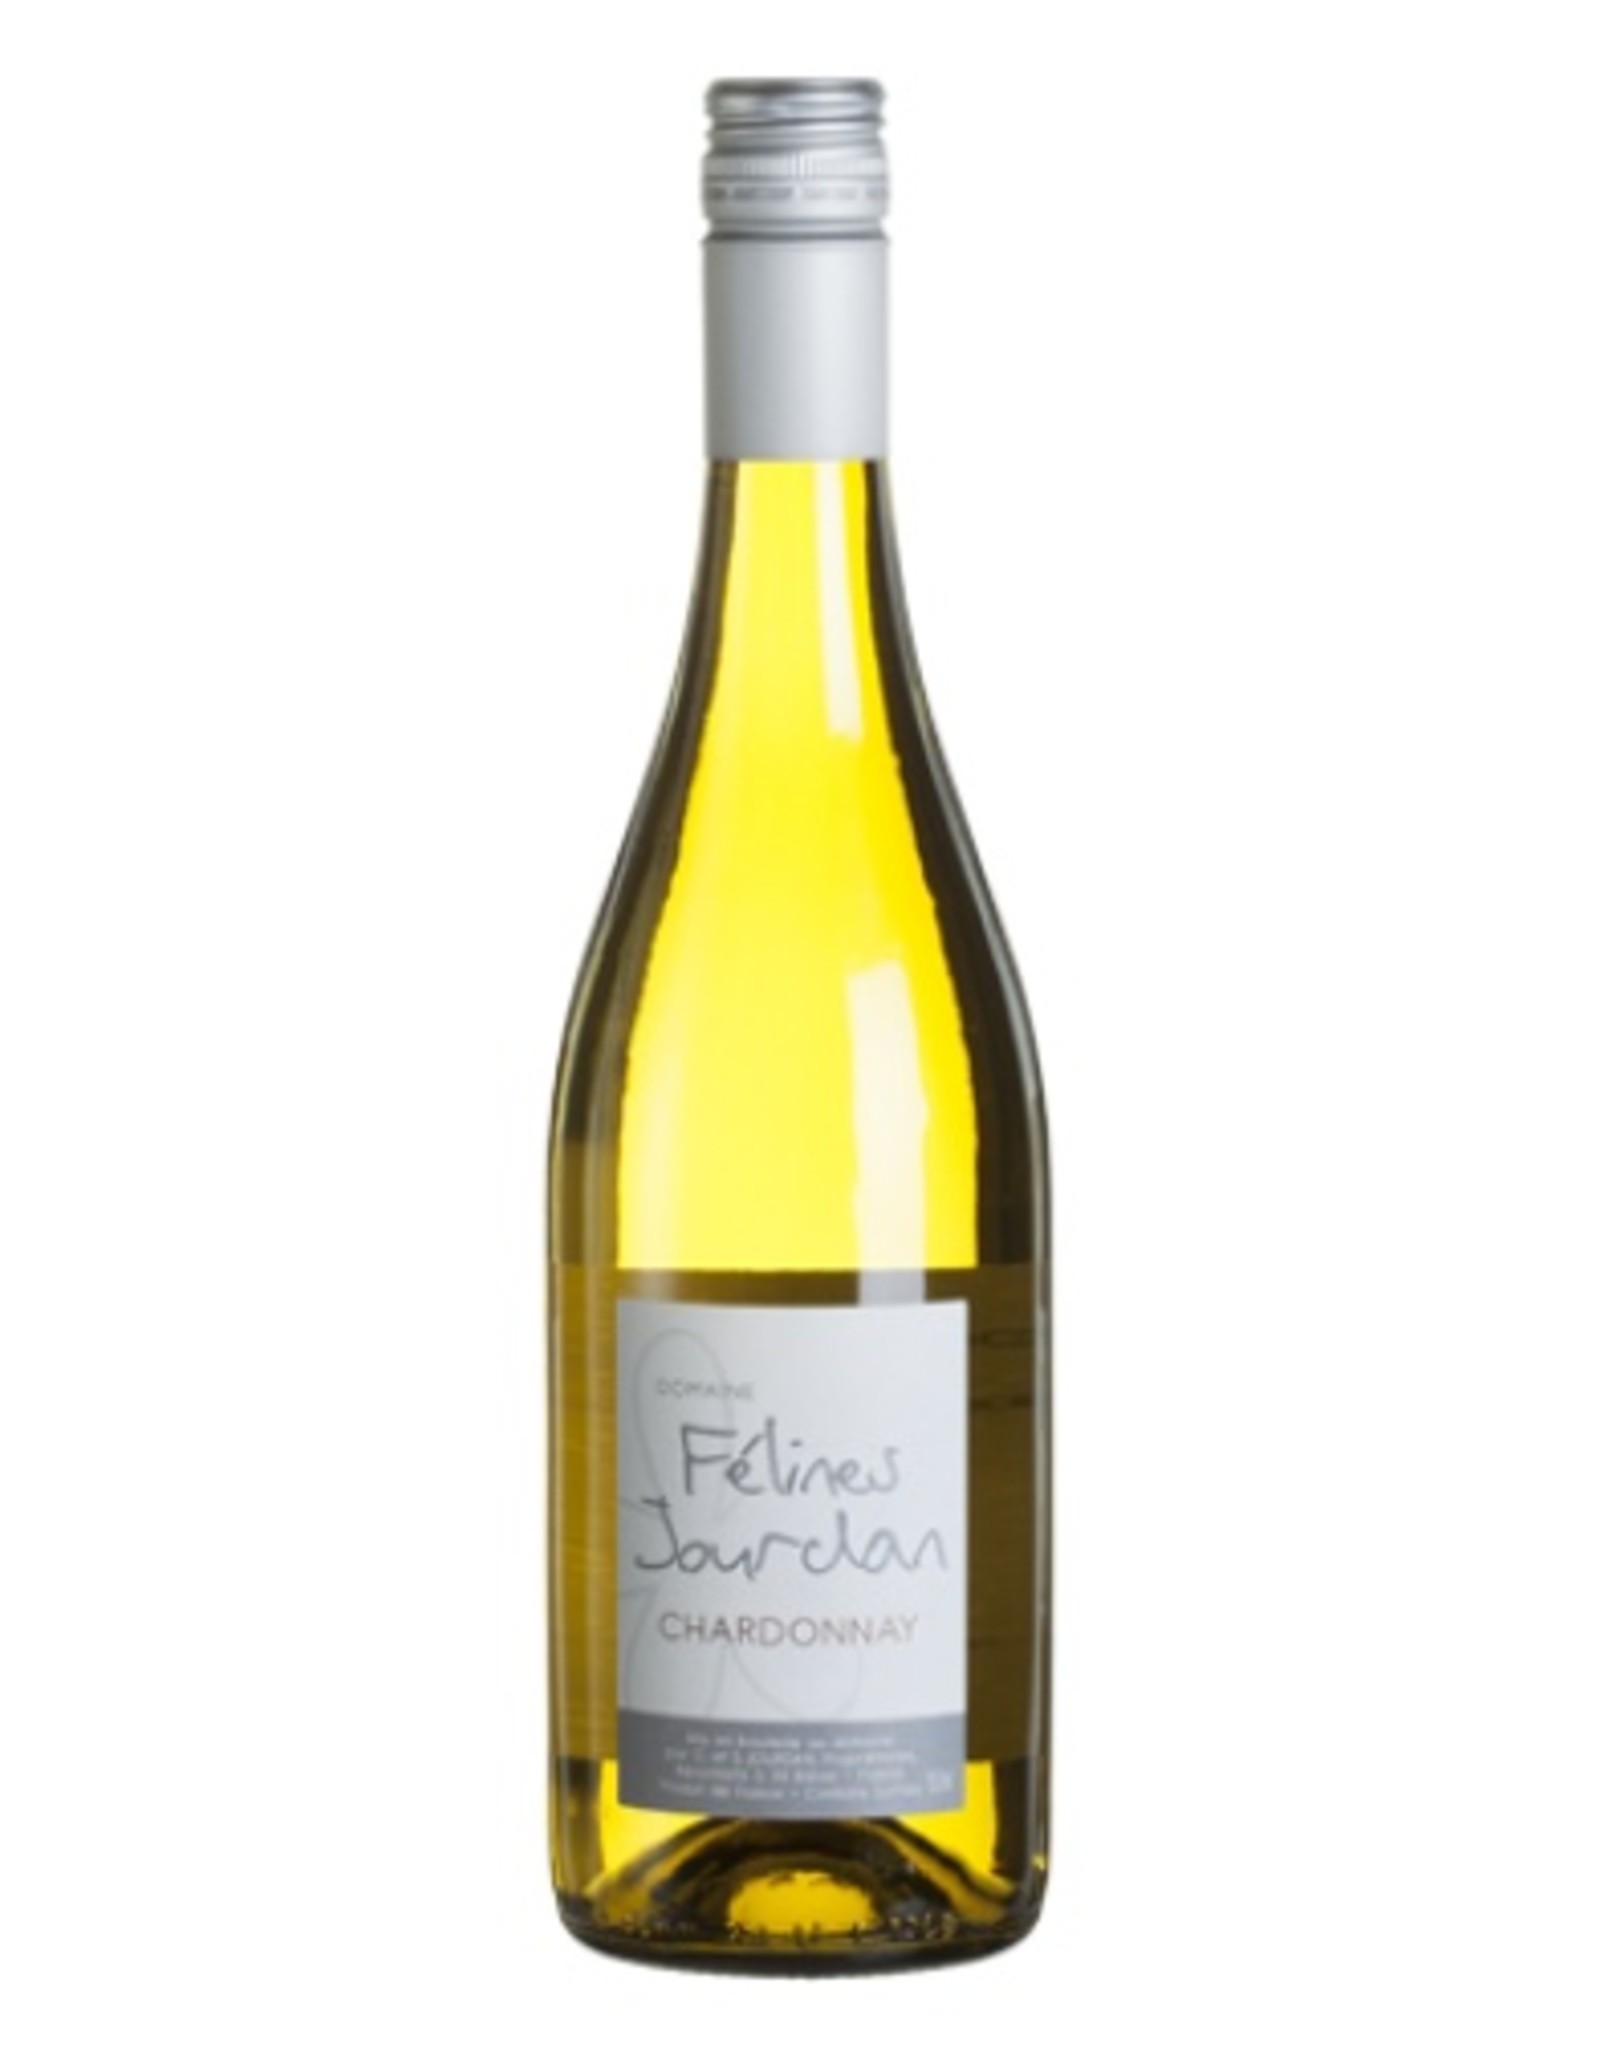 Domaine Félines Jourdan Roussanne/Chardonnay Les Fruités